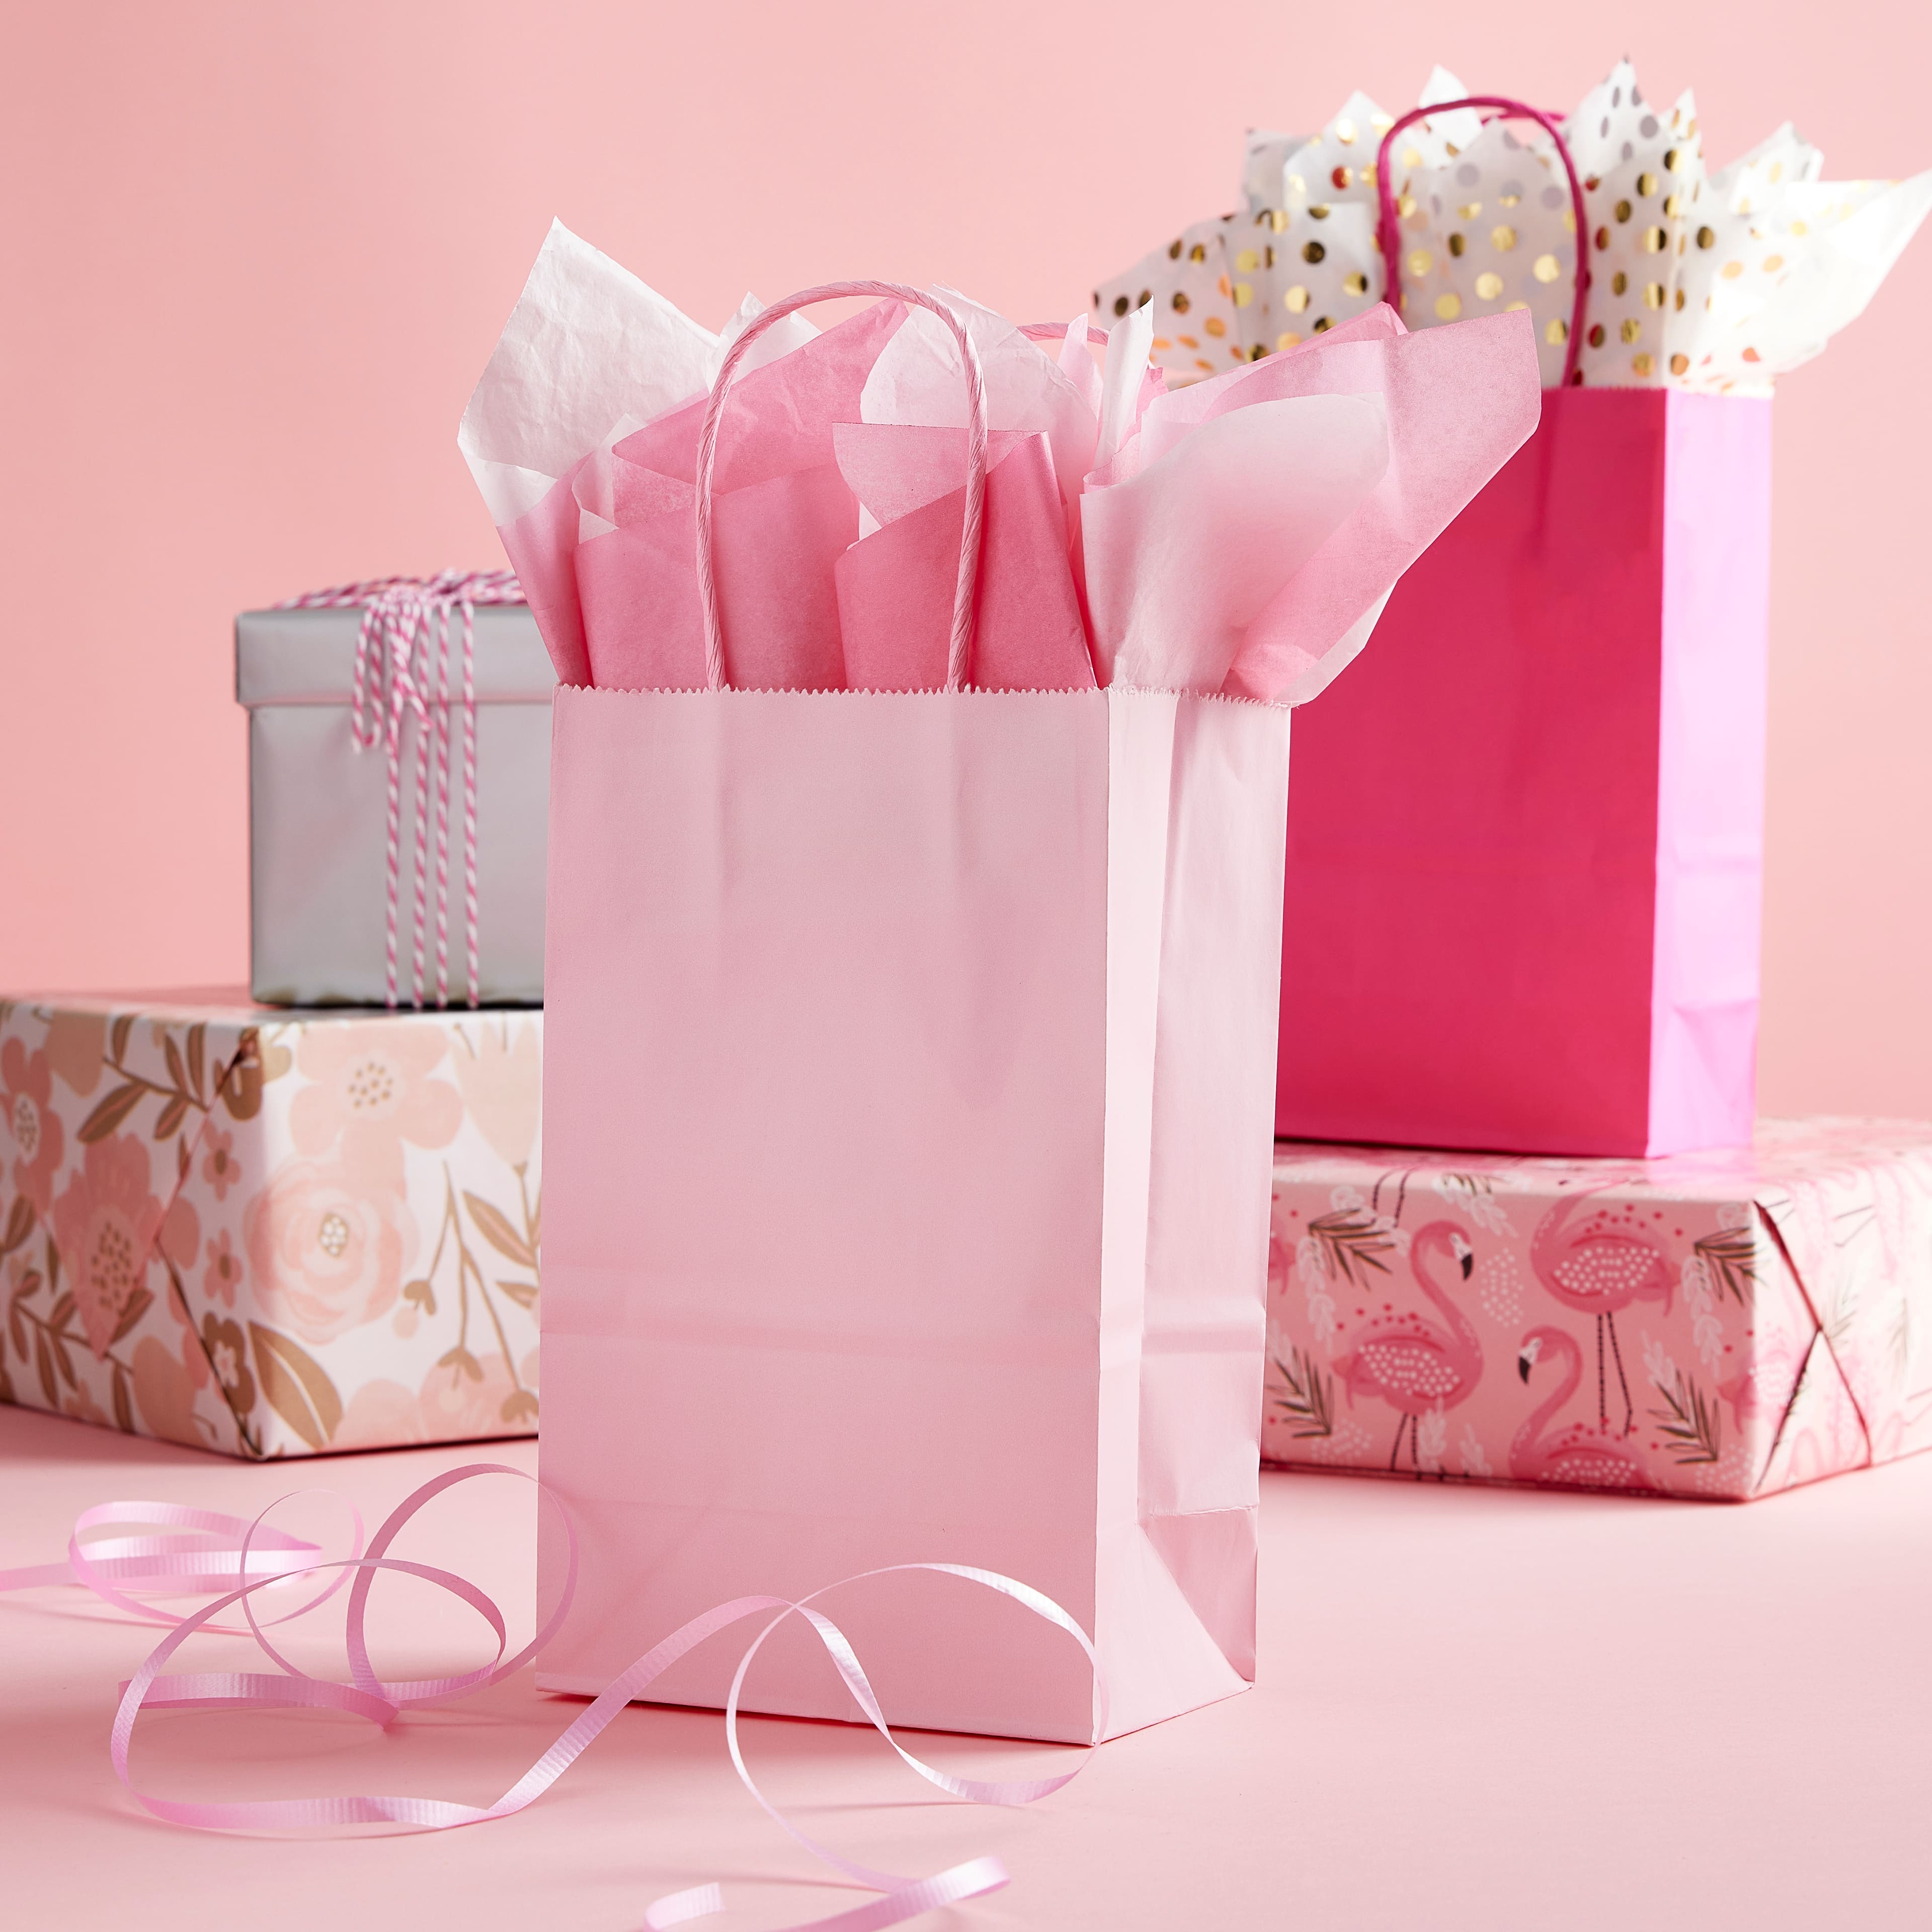 Pink Gift Tissue